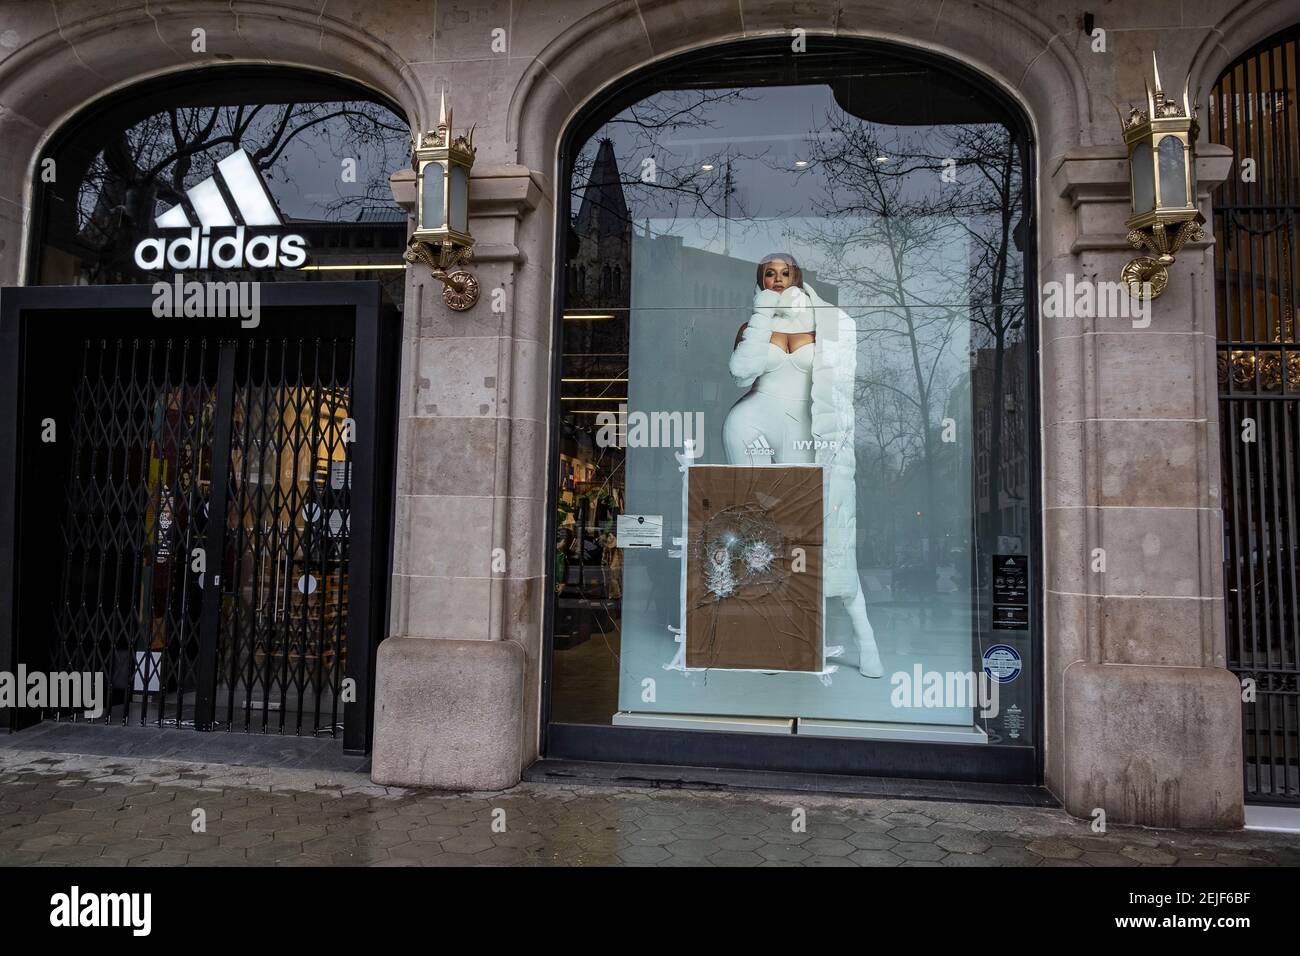 España. 22 de febrero de 2021. La tienda Adidas en el Passeig de Gràcia se ve con un daño en su ventana.más de 50 tiendas han sufrido daños en sus escaparates